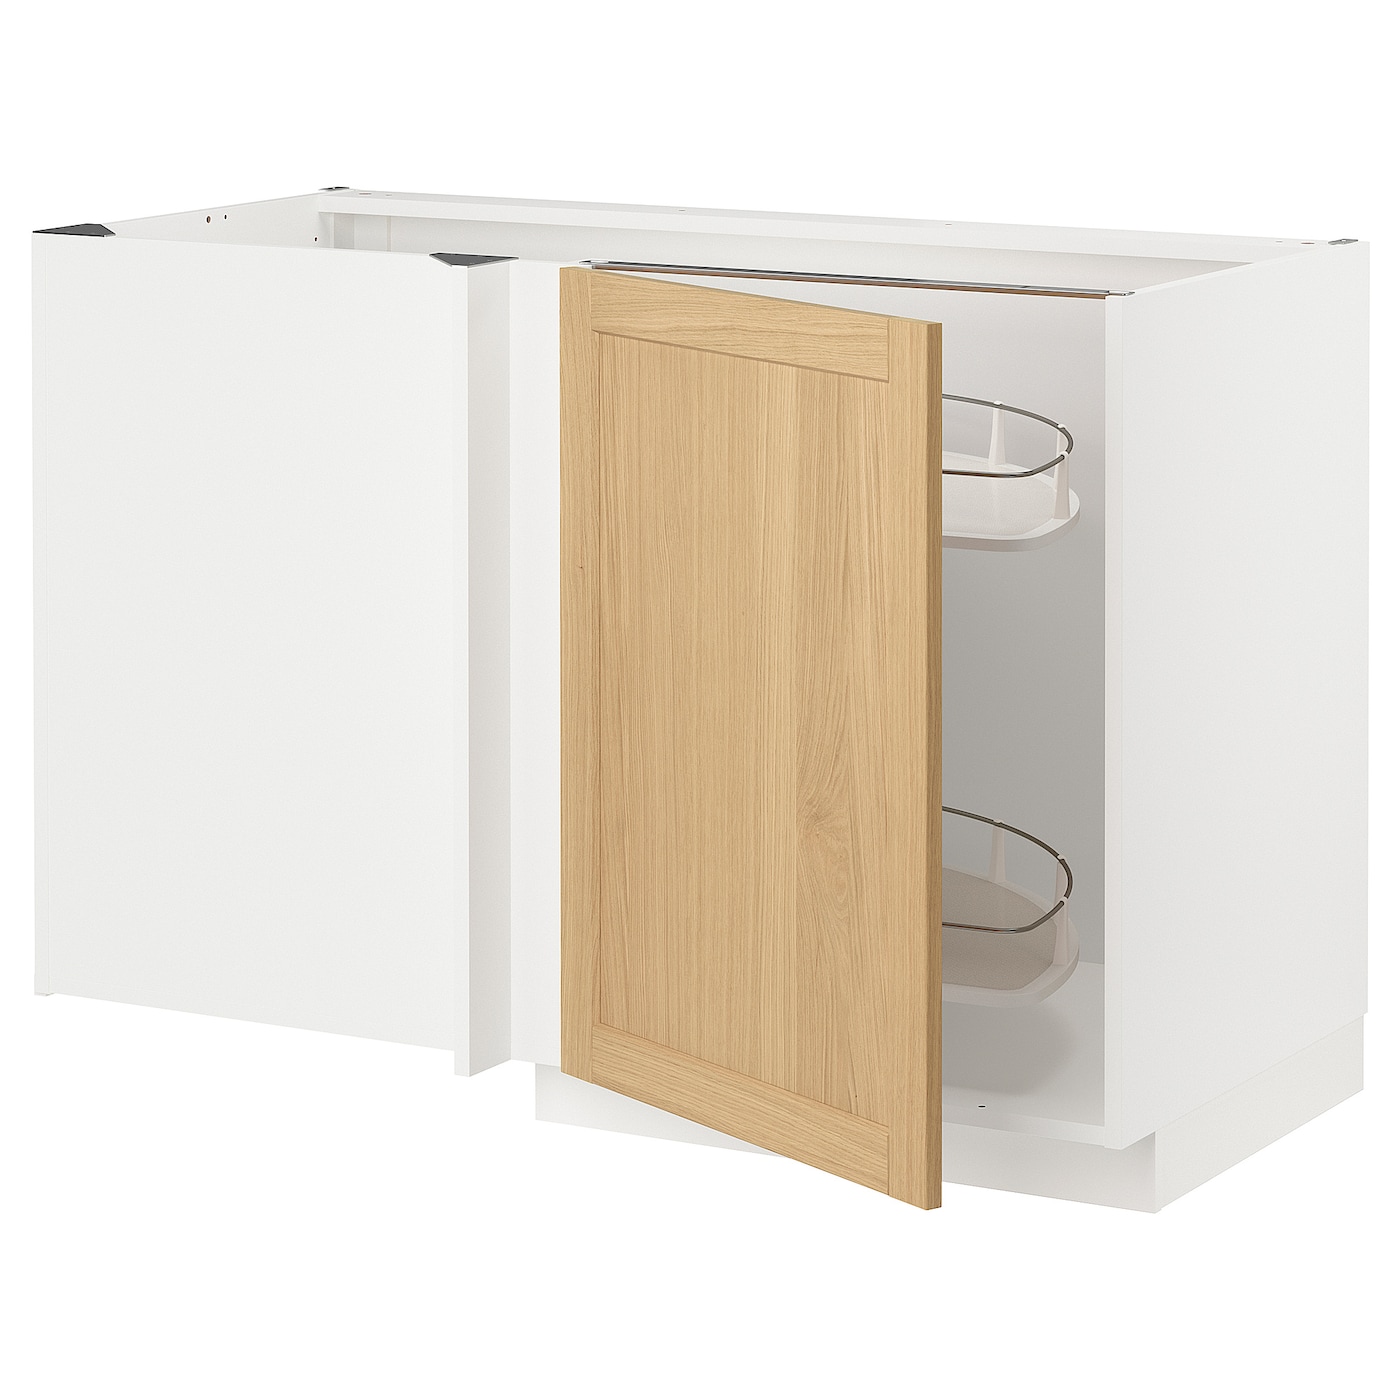 Напольный шкаф - METOD IKEA/ МЕТОД ИКЕА,  128х68 см, белый/под беленый дуб